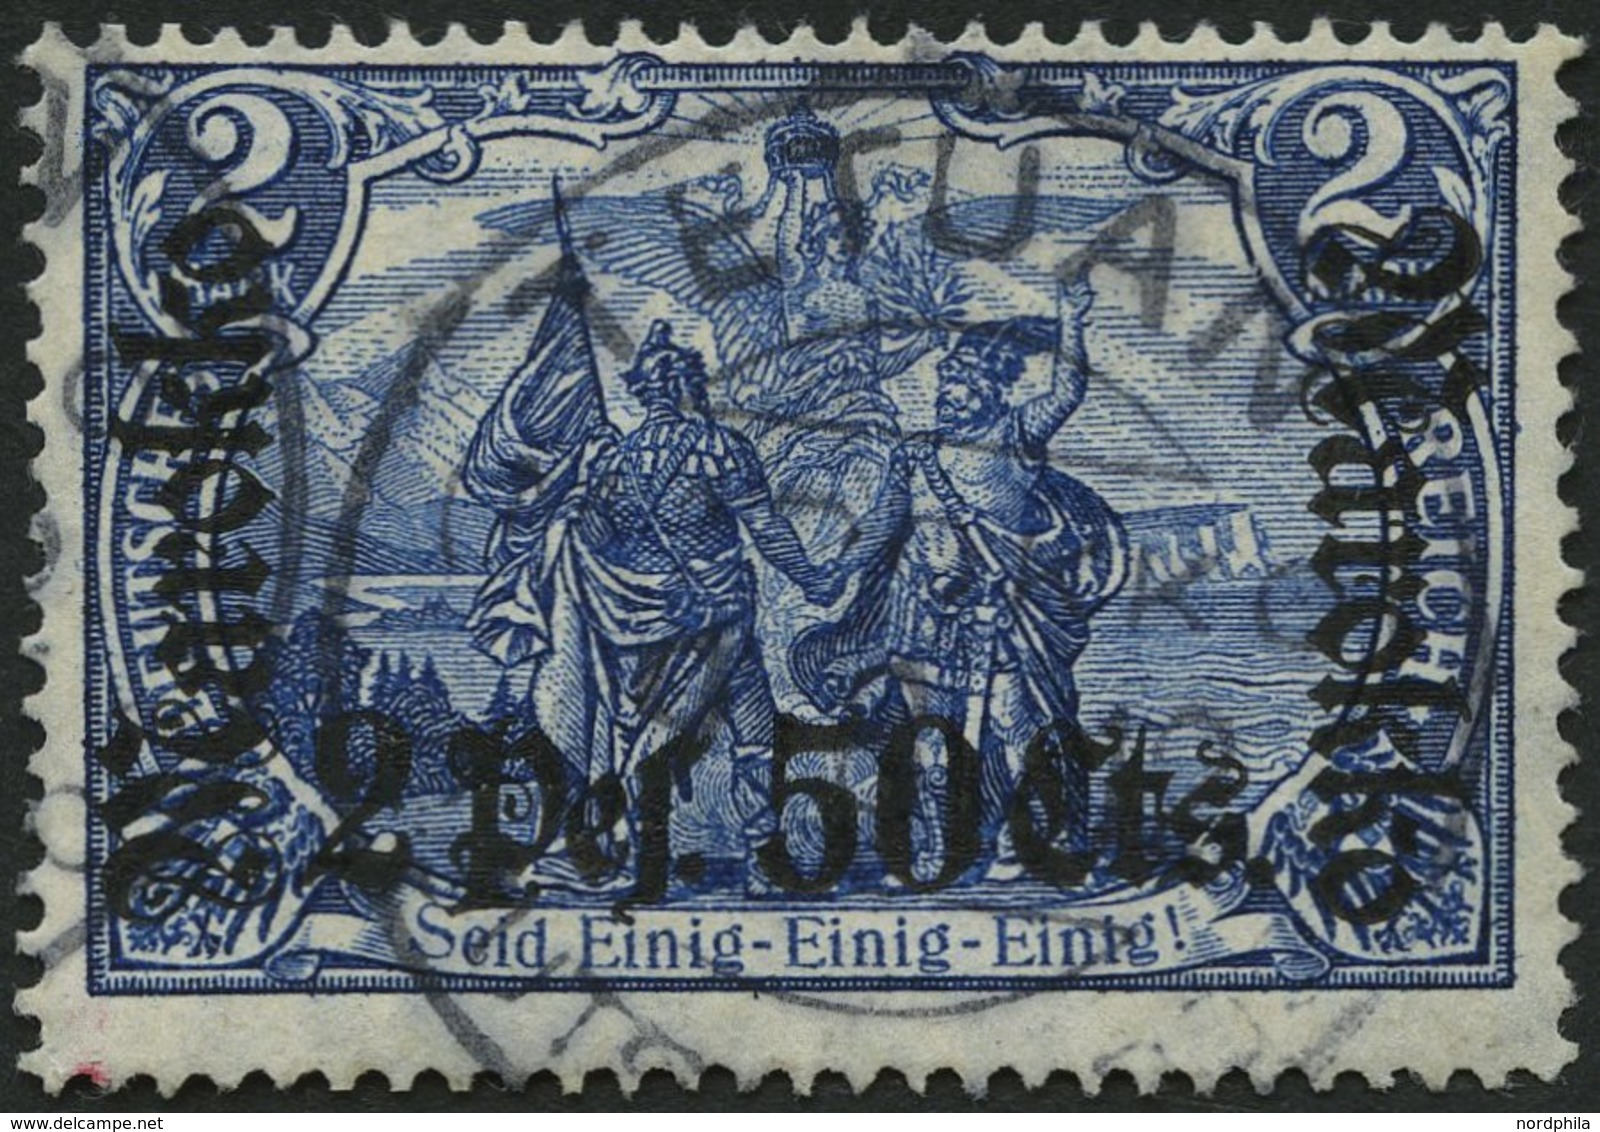 DP IN MAROKKO 56IA O, 1911, 2 P. 50 C. Auf 2 M., Friedensdruck, Stempel TETUAN, Pracht, Gepr. W. Engel - Deutsche Post In Marokko